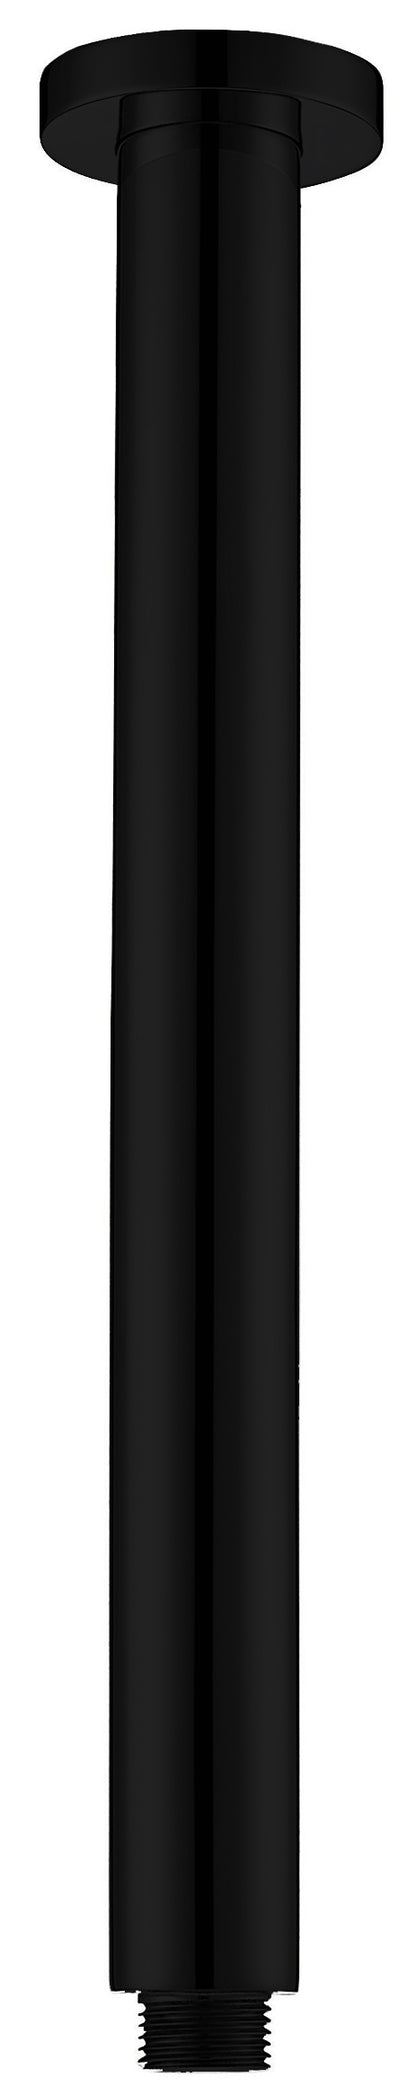 Round Vertical Shower Arm - Matte Black